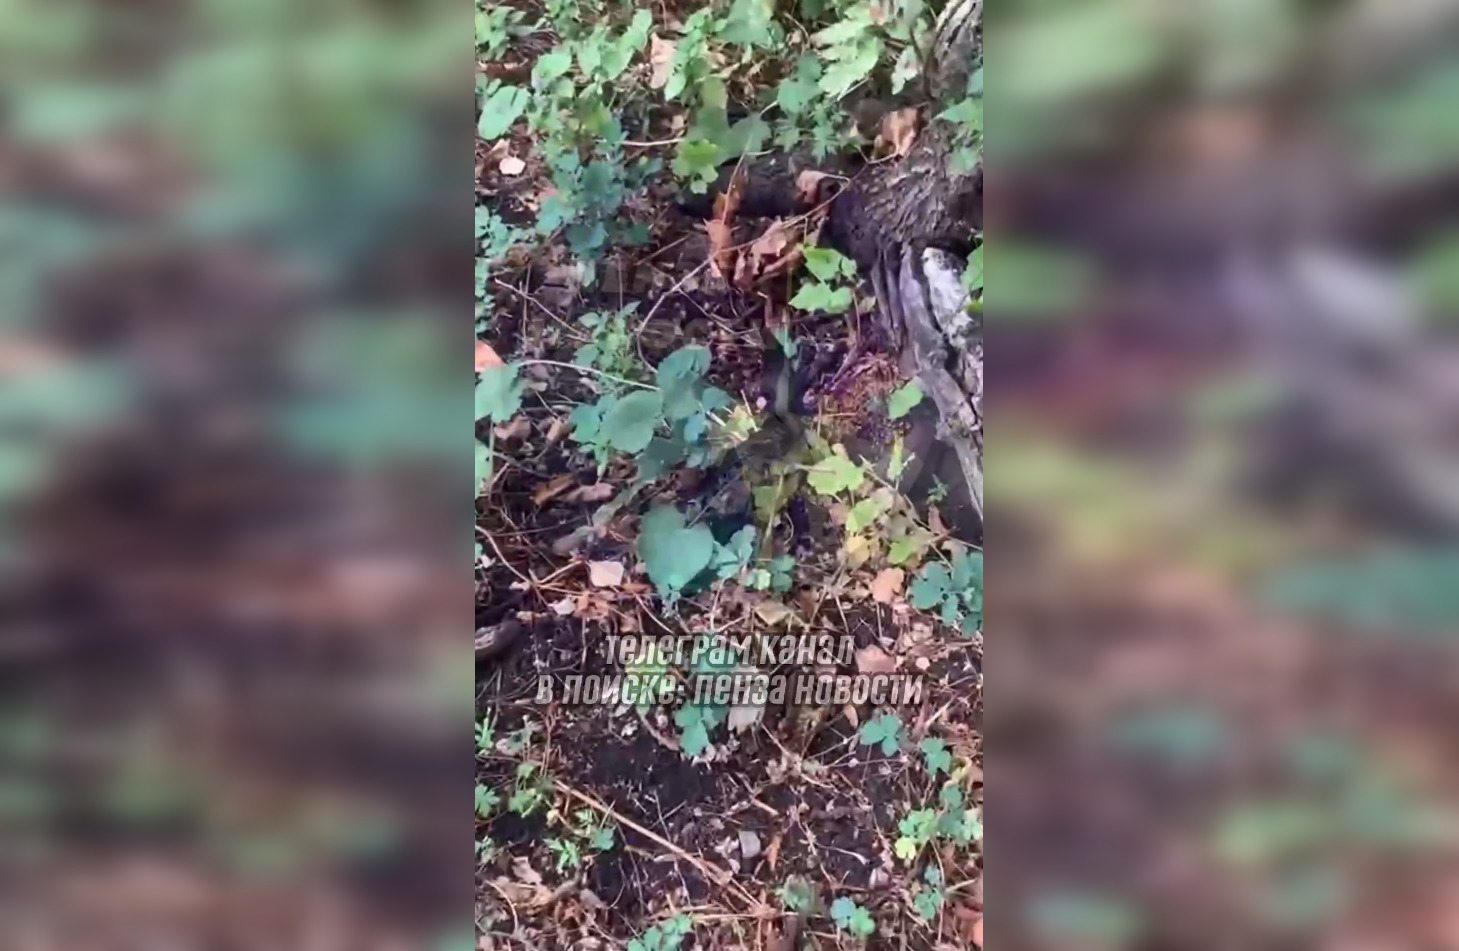 Пензенцы нашли упавшего птенца стрижа на земле у дерева